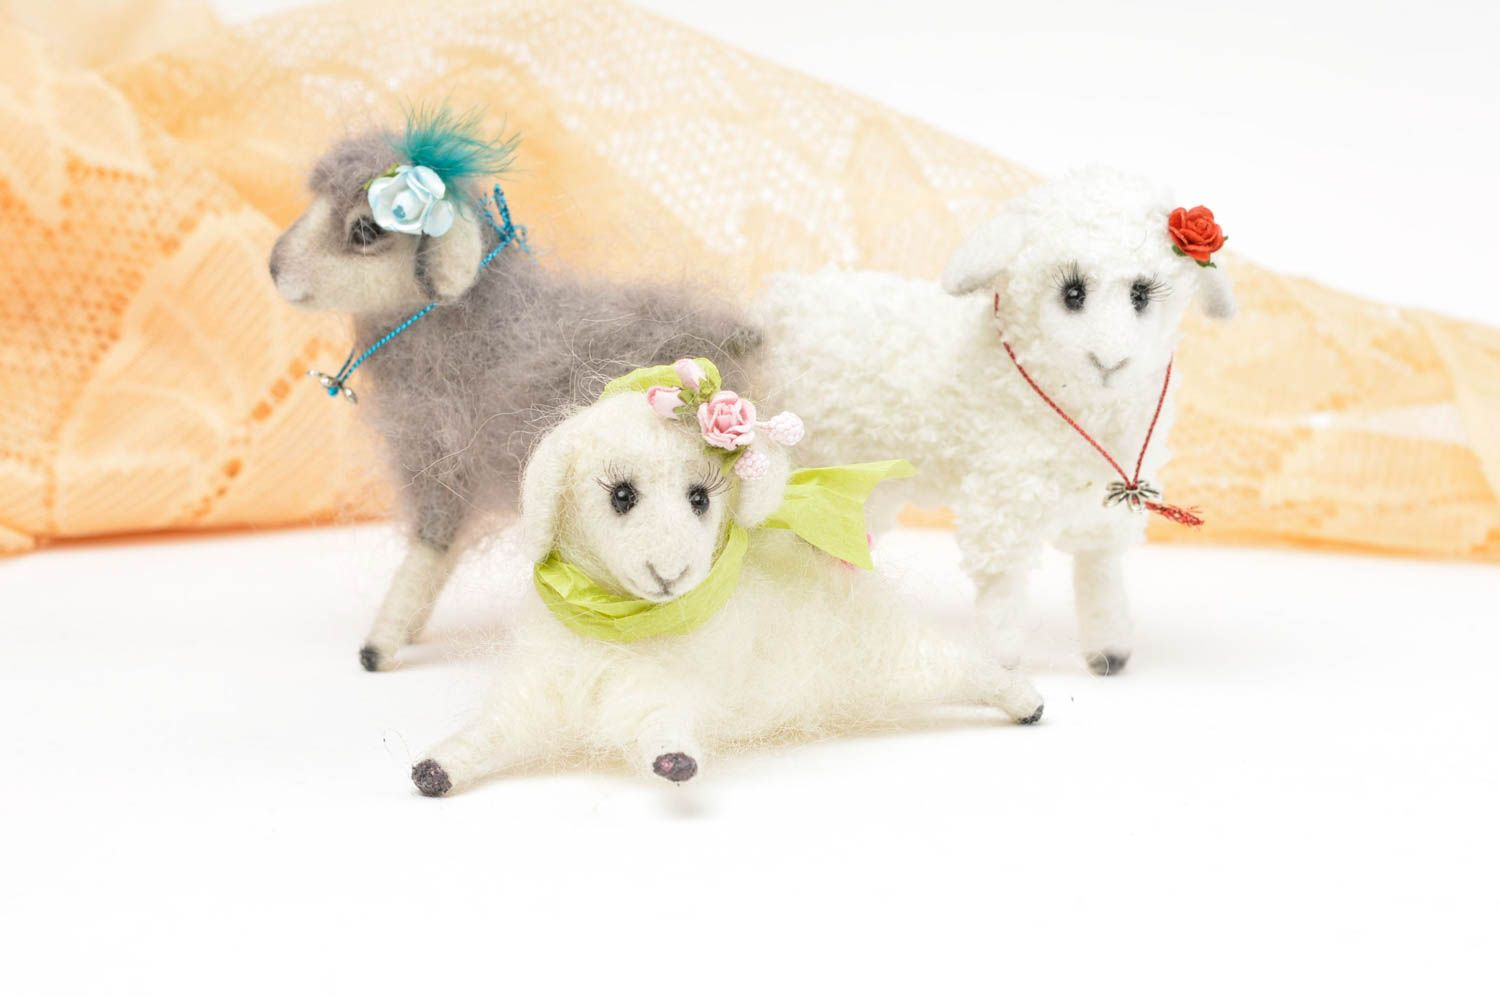 Handmade Spielzeug Set Stoff Tiere Geschenk Idee Kuschel Tiere Schafe schön foto 4